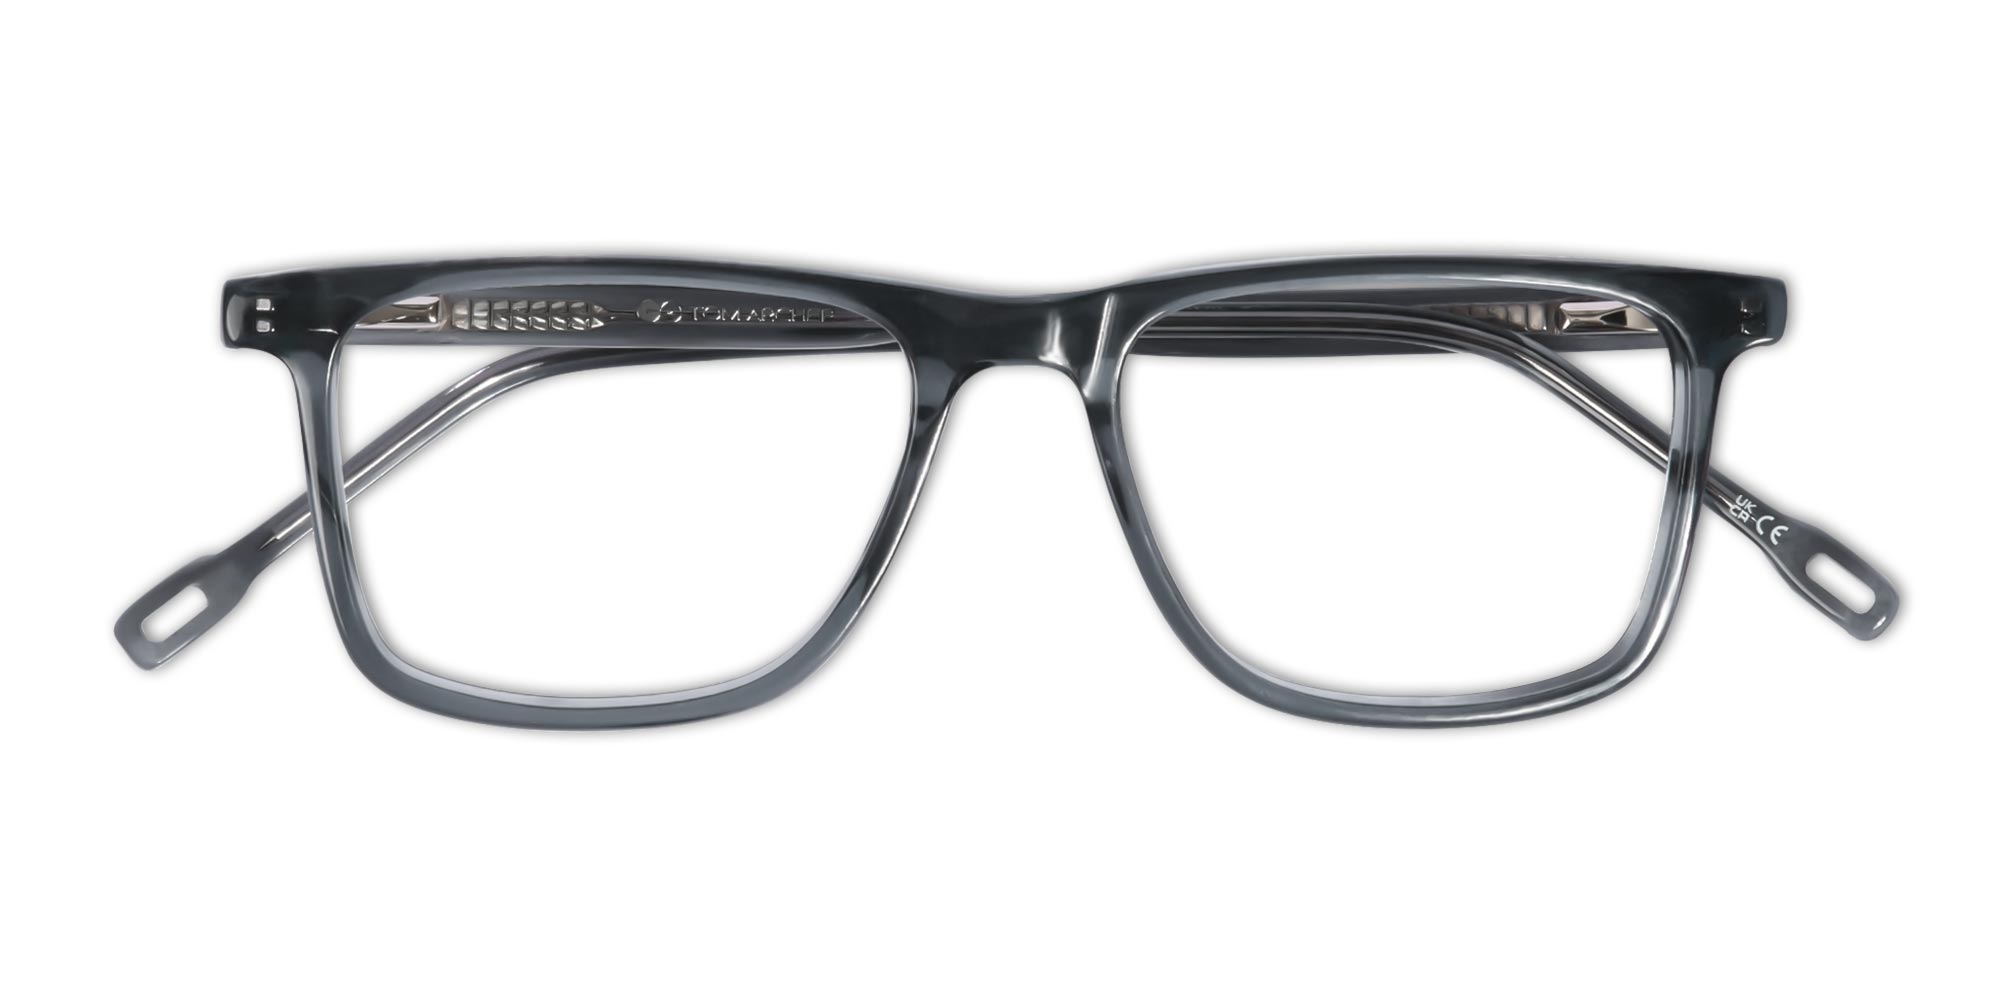 Crystal Slate Gray Rectangular Eyeglasses Frames-1